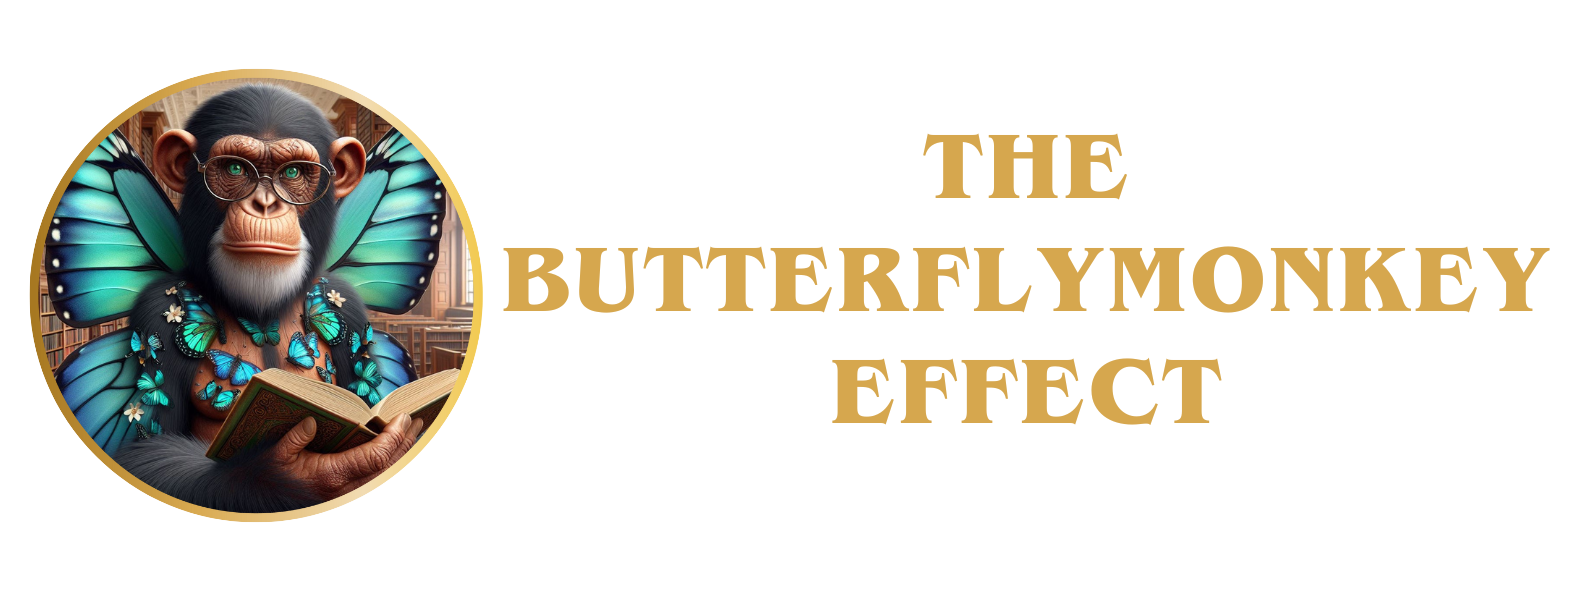 The ButterflyMonkey Effect